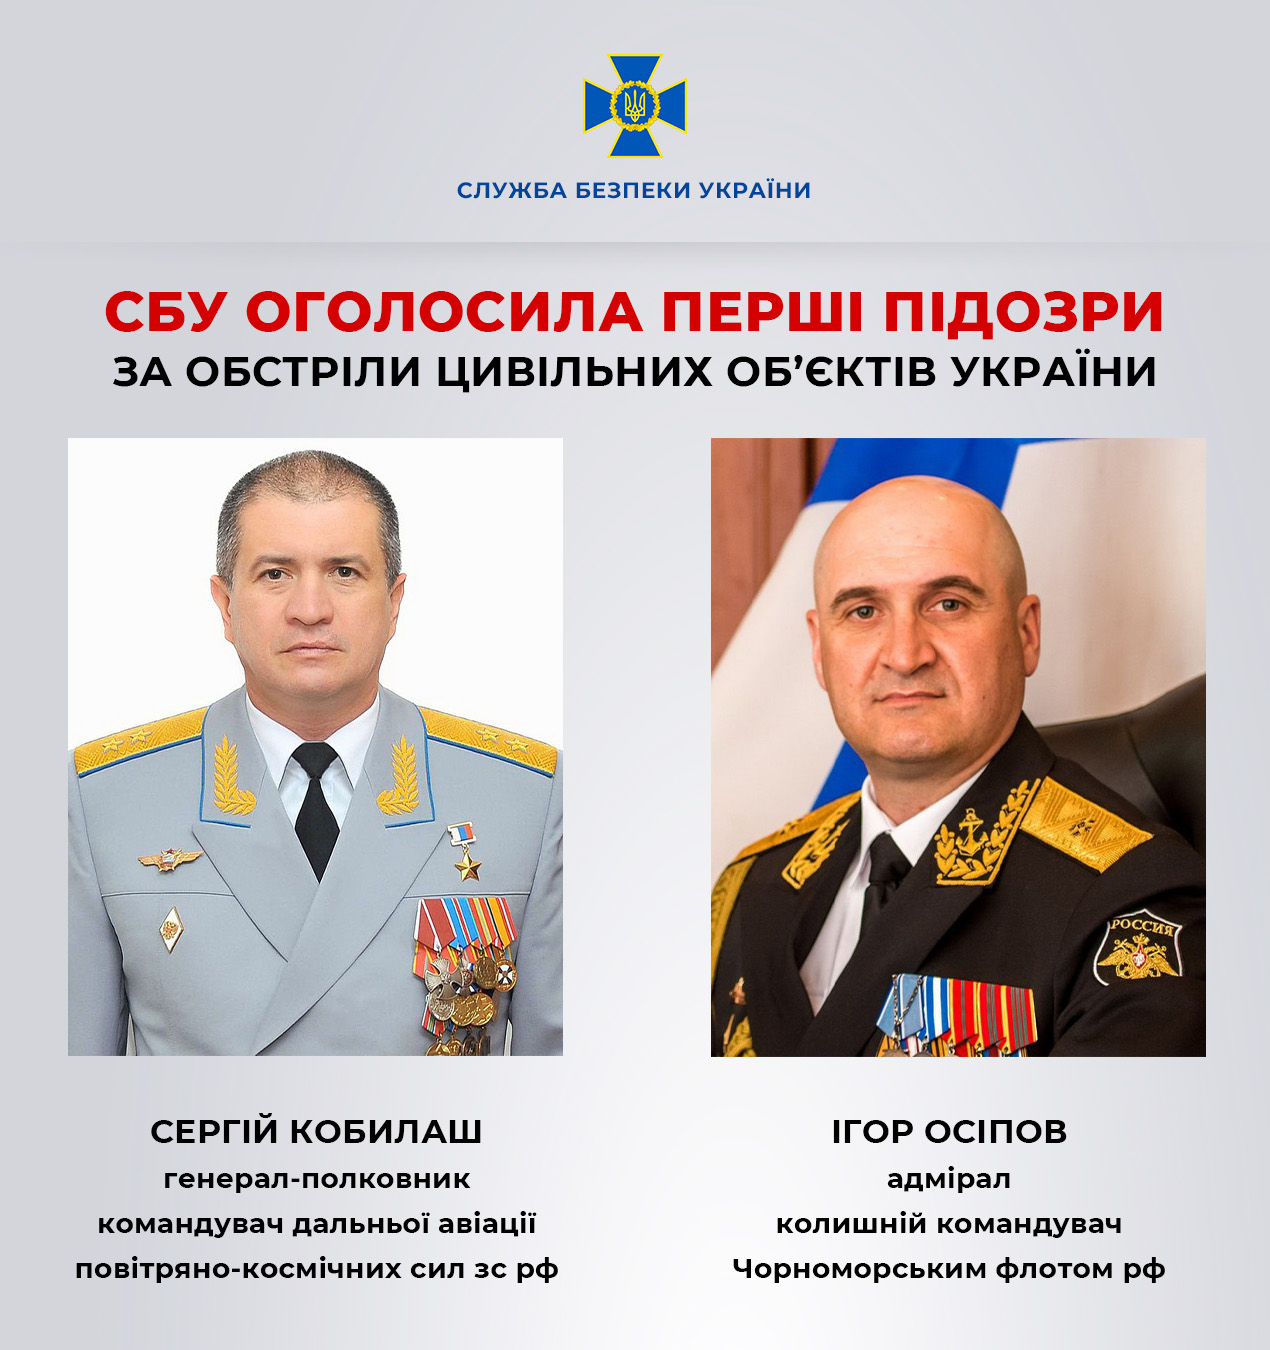 СБУ объявила первые подозрения генералу и адмиралу РФ за обстрелы гражданских объектов Украины - 1 - изображение